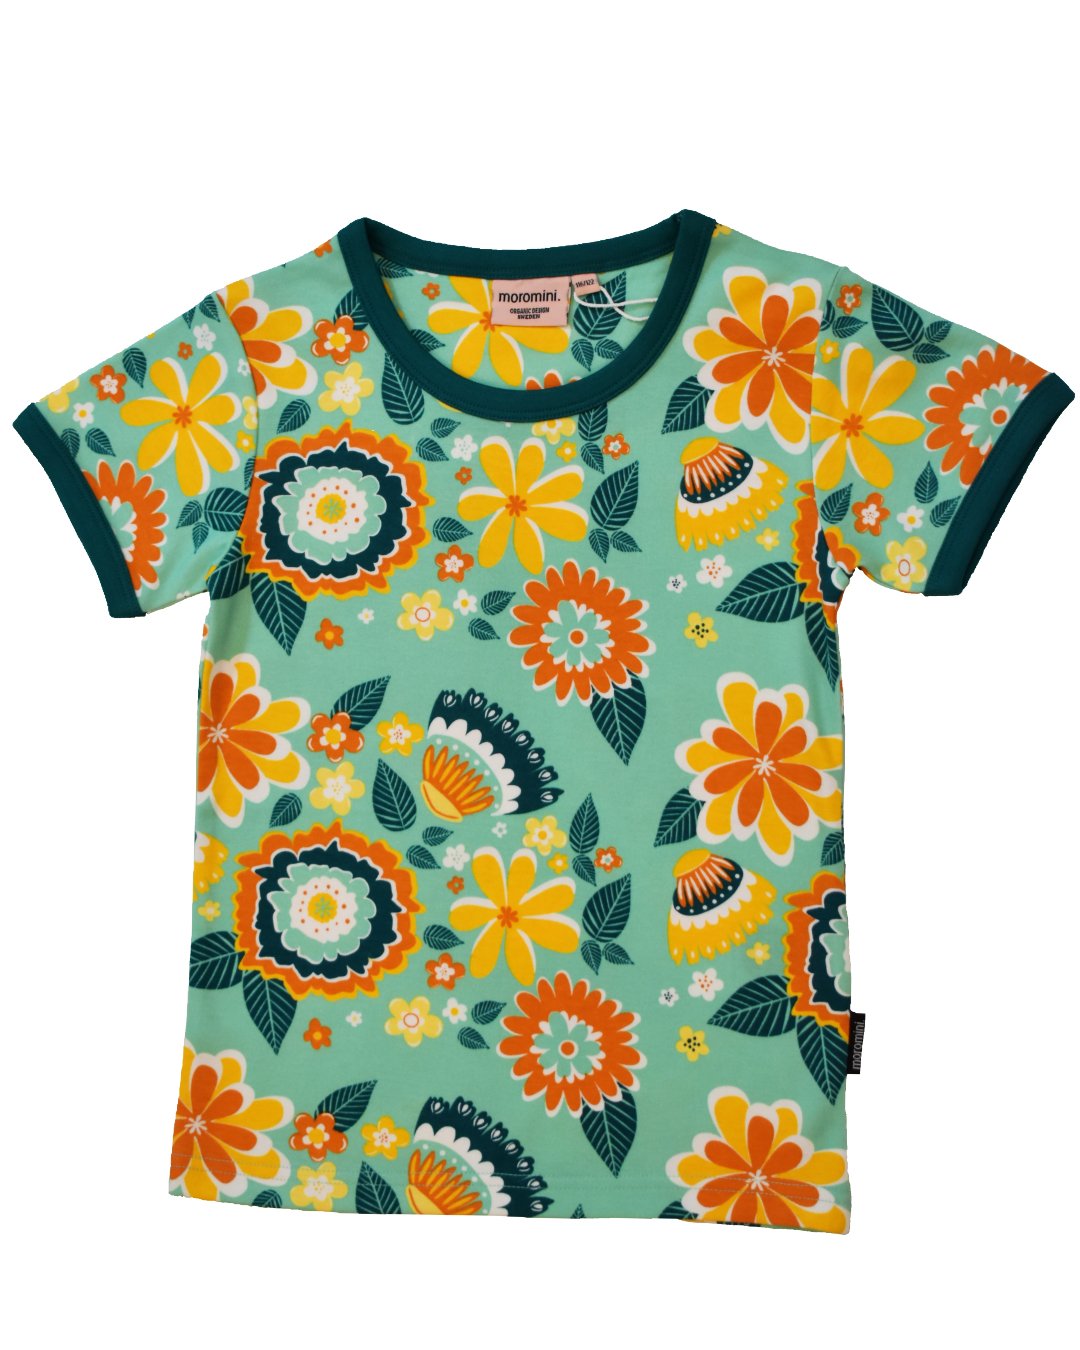 Grünes T-Shirt für Kinder mit Blumenmuster von moromini